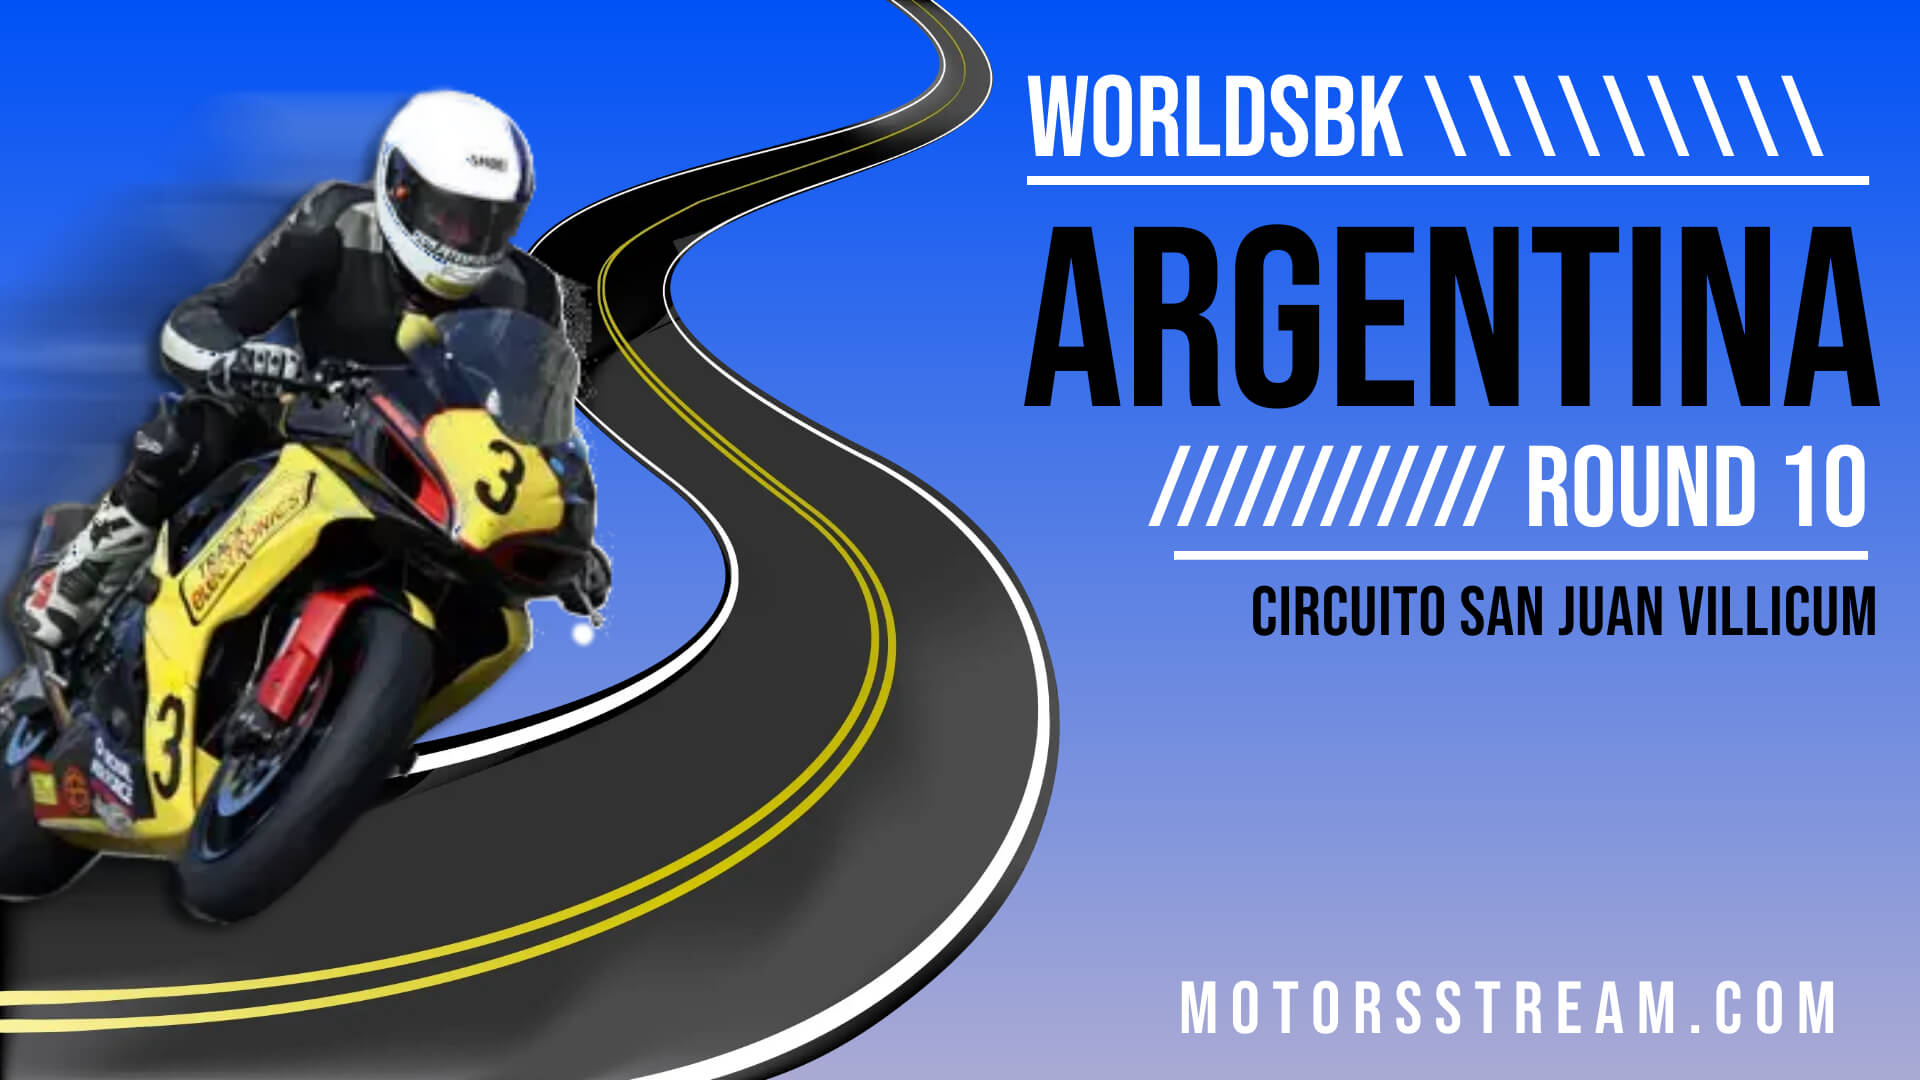 Argentina WSBK Round 10 Live Stream 2022